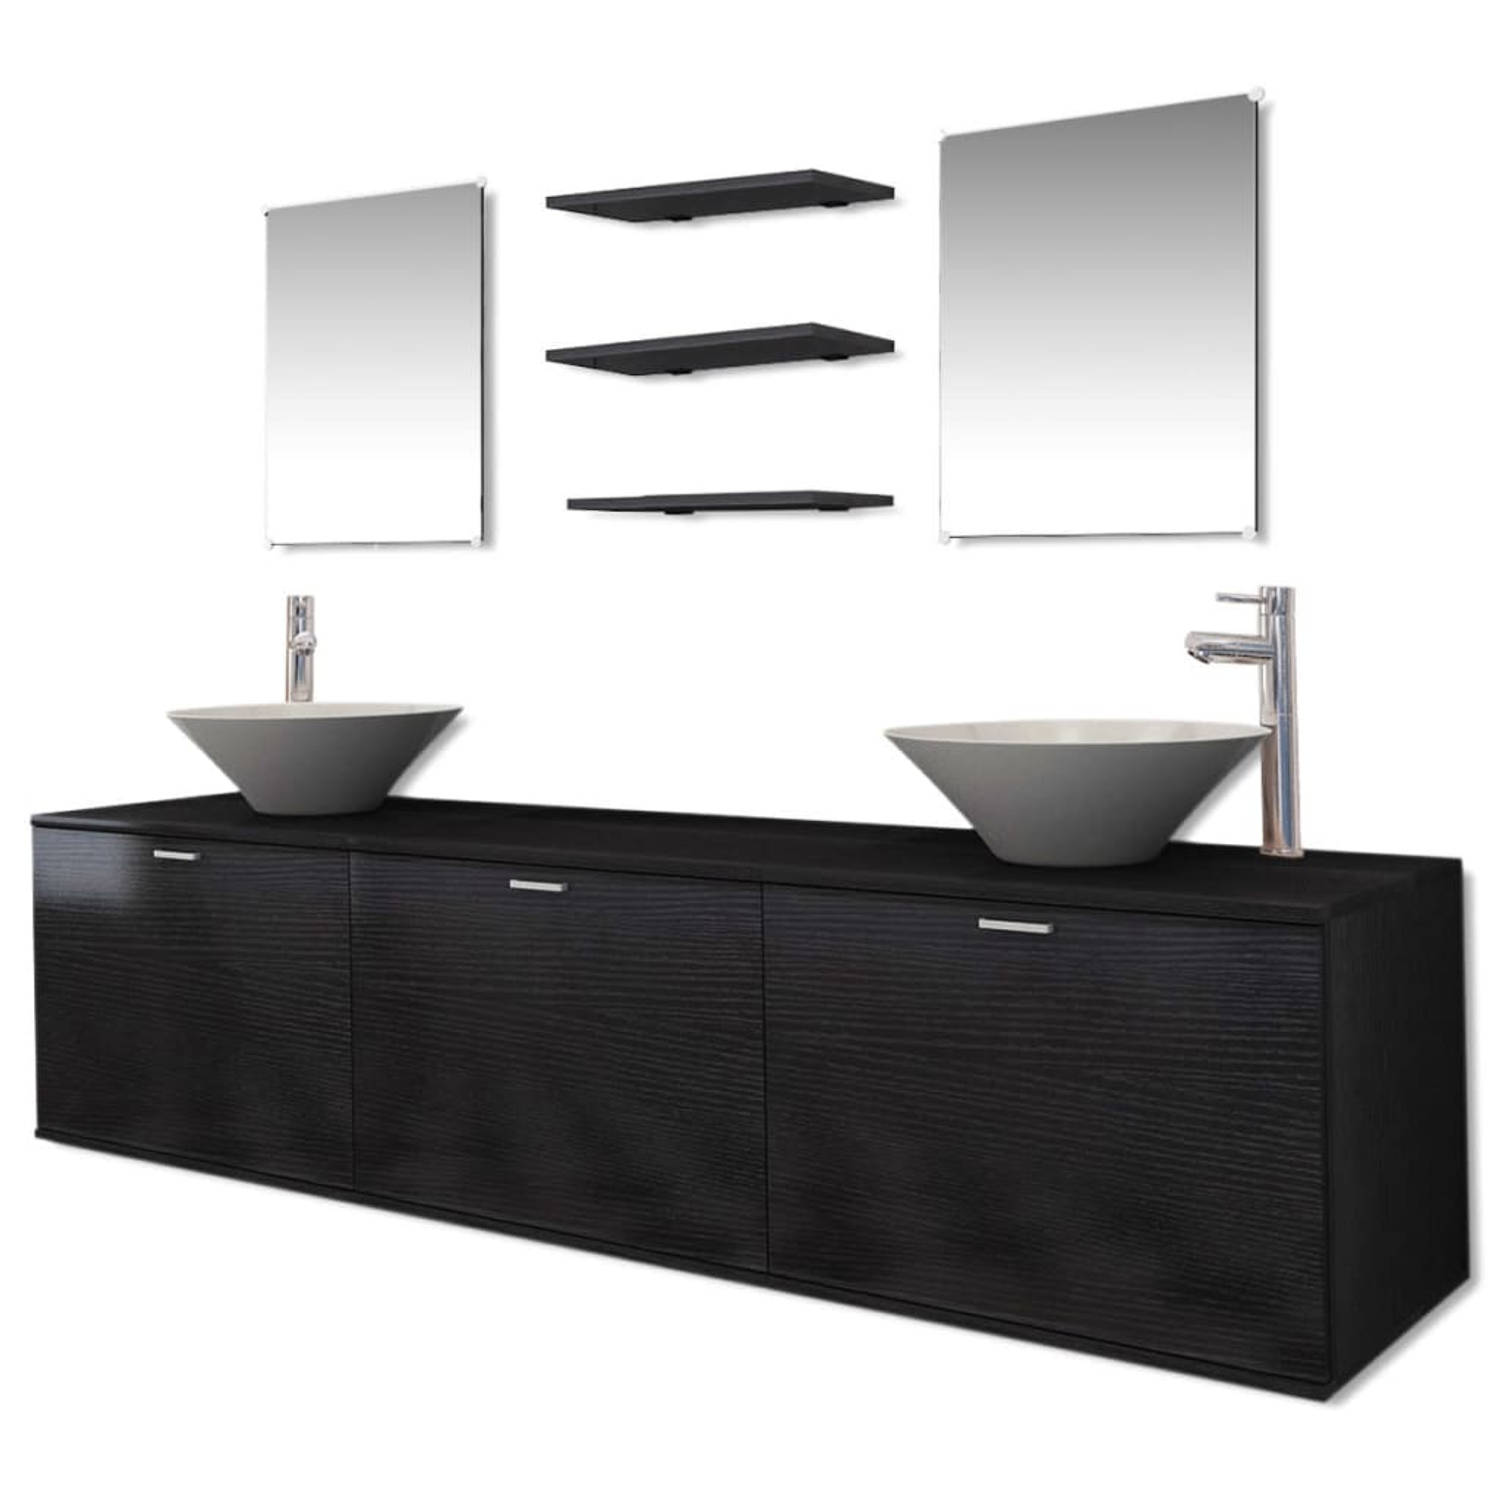 The Living Store Badkamermeubel - zwart - spaanplaat - 180 x 45 x 45 cm - 3-deurs - incl - 2 spiegels - 3 planken - 2 wasbakken en 2 kranen